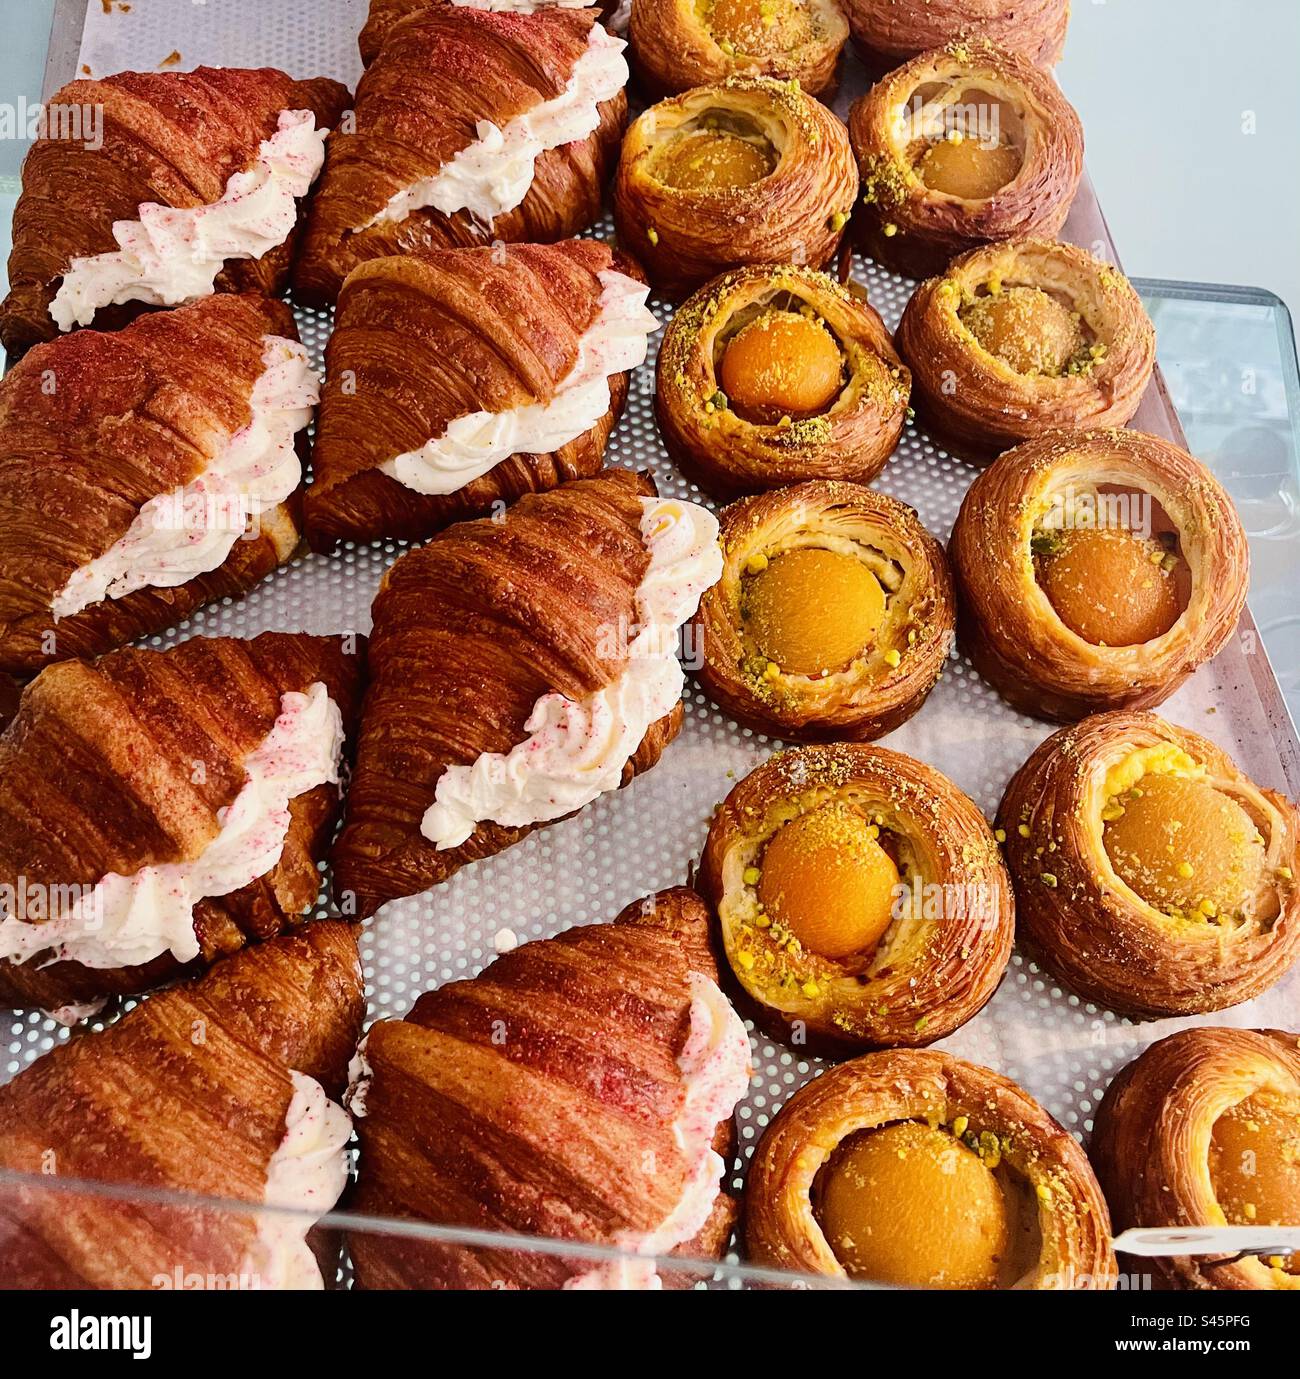 Pâtisseries à l'abricot et croissants à la crème à la boulangerie Buka à Copenhague, Danemark. Banque D'Images